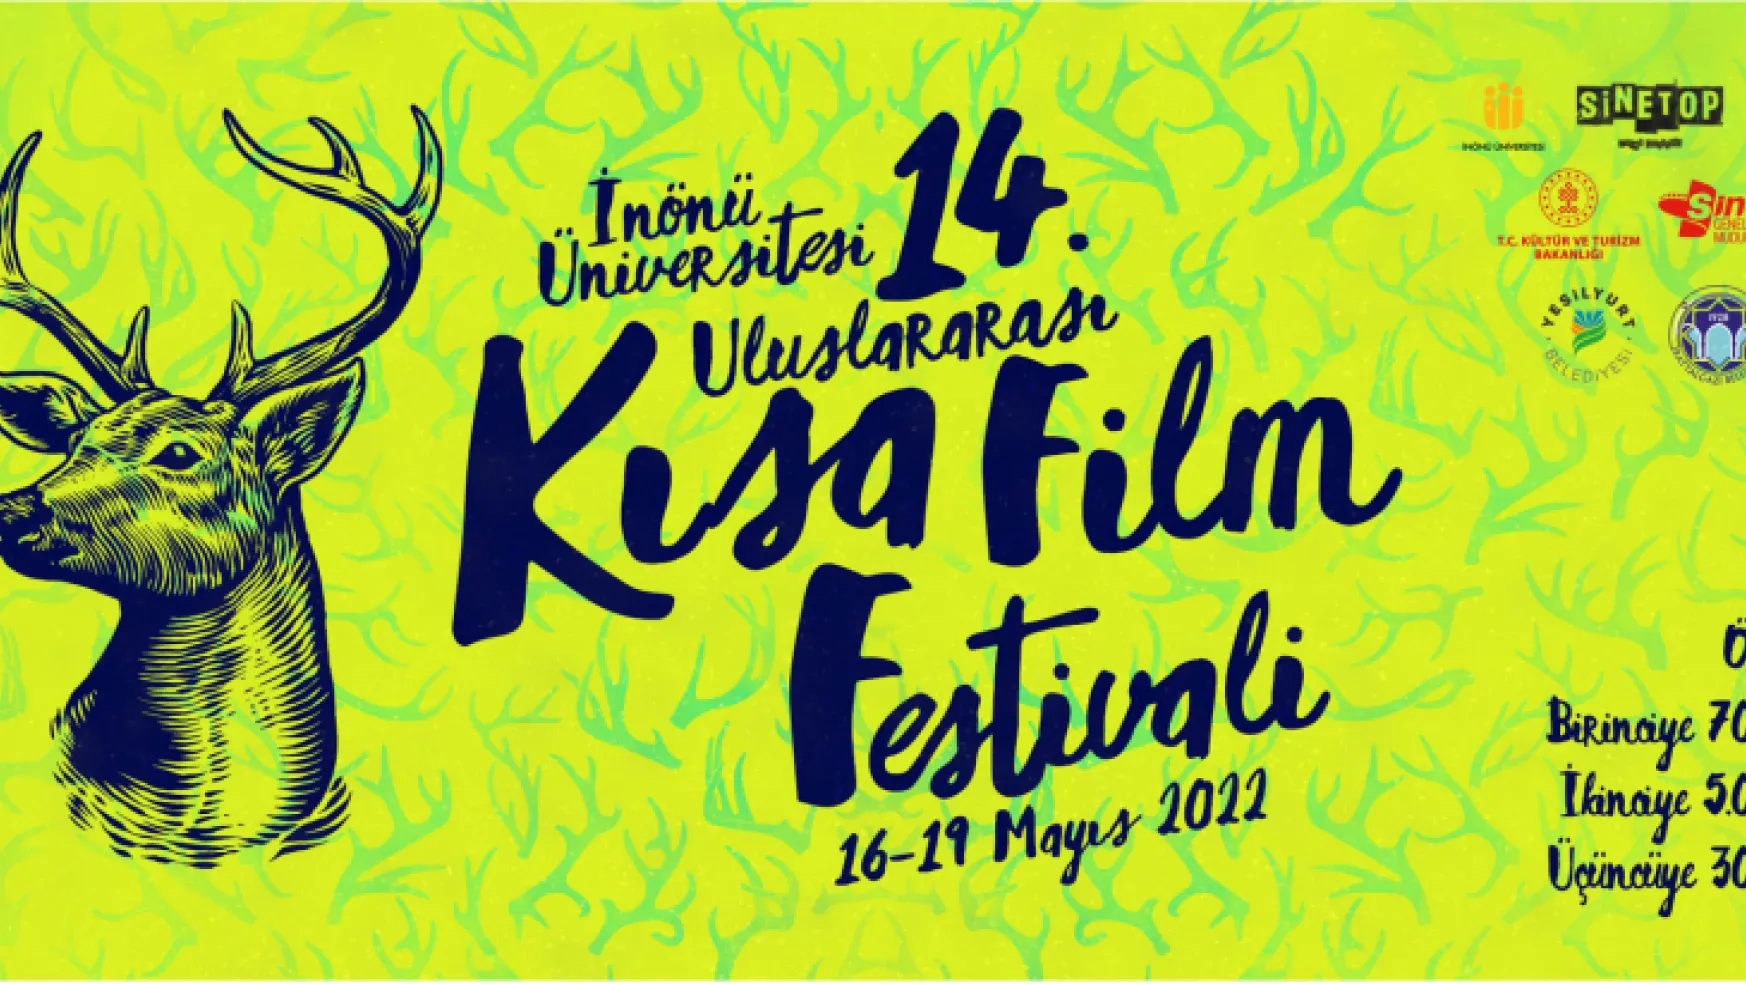 İnönü Üniversitesi 14. Uluslararası Kısa Film Festivali'nin Lansman Toplantısı Gerçekleştirildi